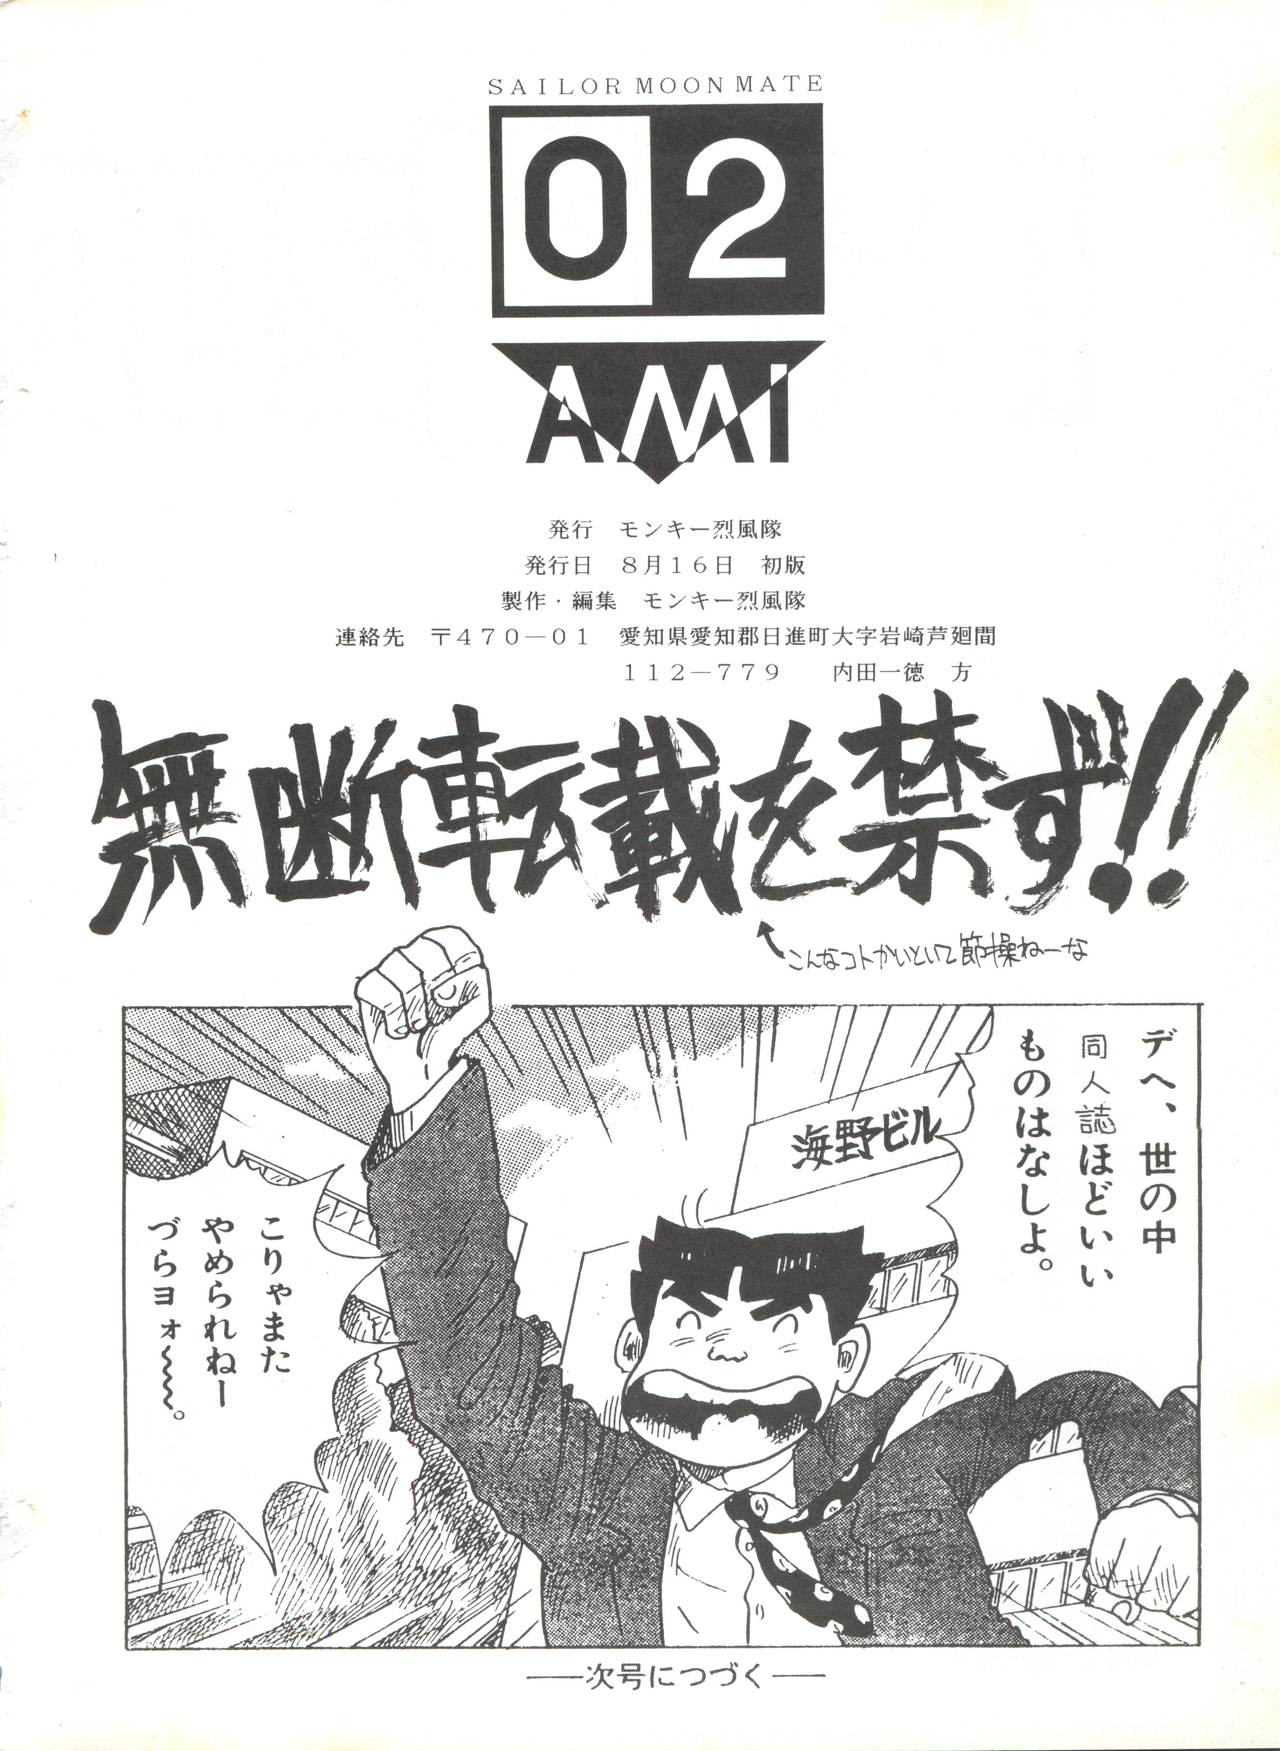 (C42) [Monkey Reppuutai (Doudantsutsuji, Monkey Ni-gou, Teiou Keikaku)] SAILOR MOON MATE 02 Ami (Bishoujo Senshi Sailor Moon) page 41 full